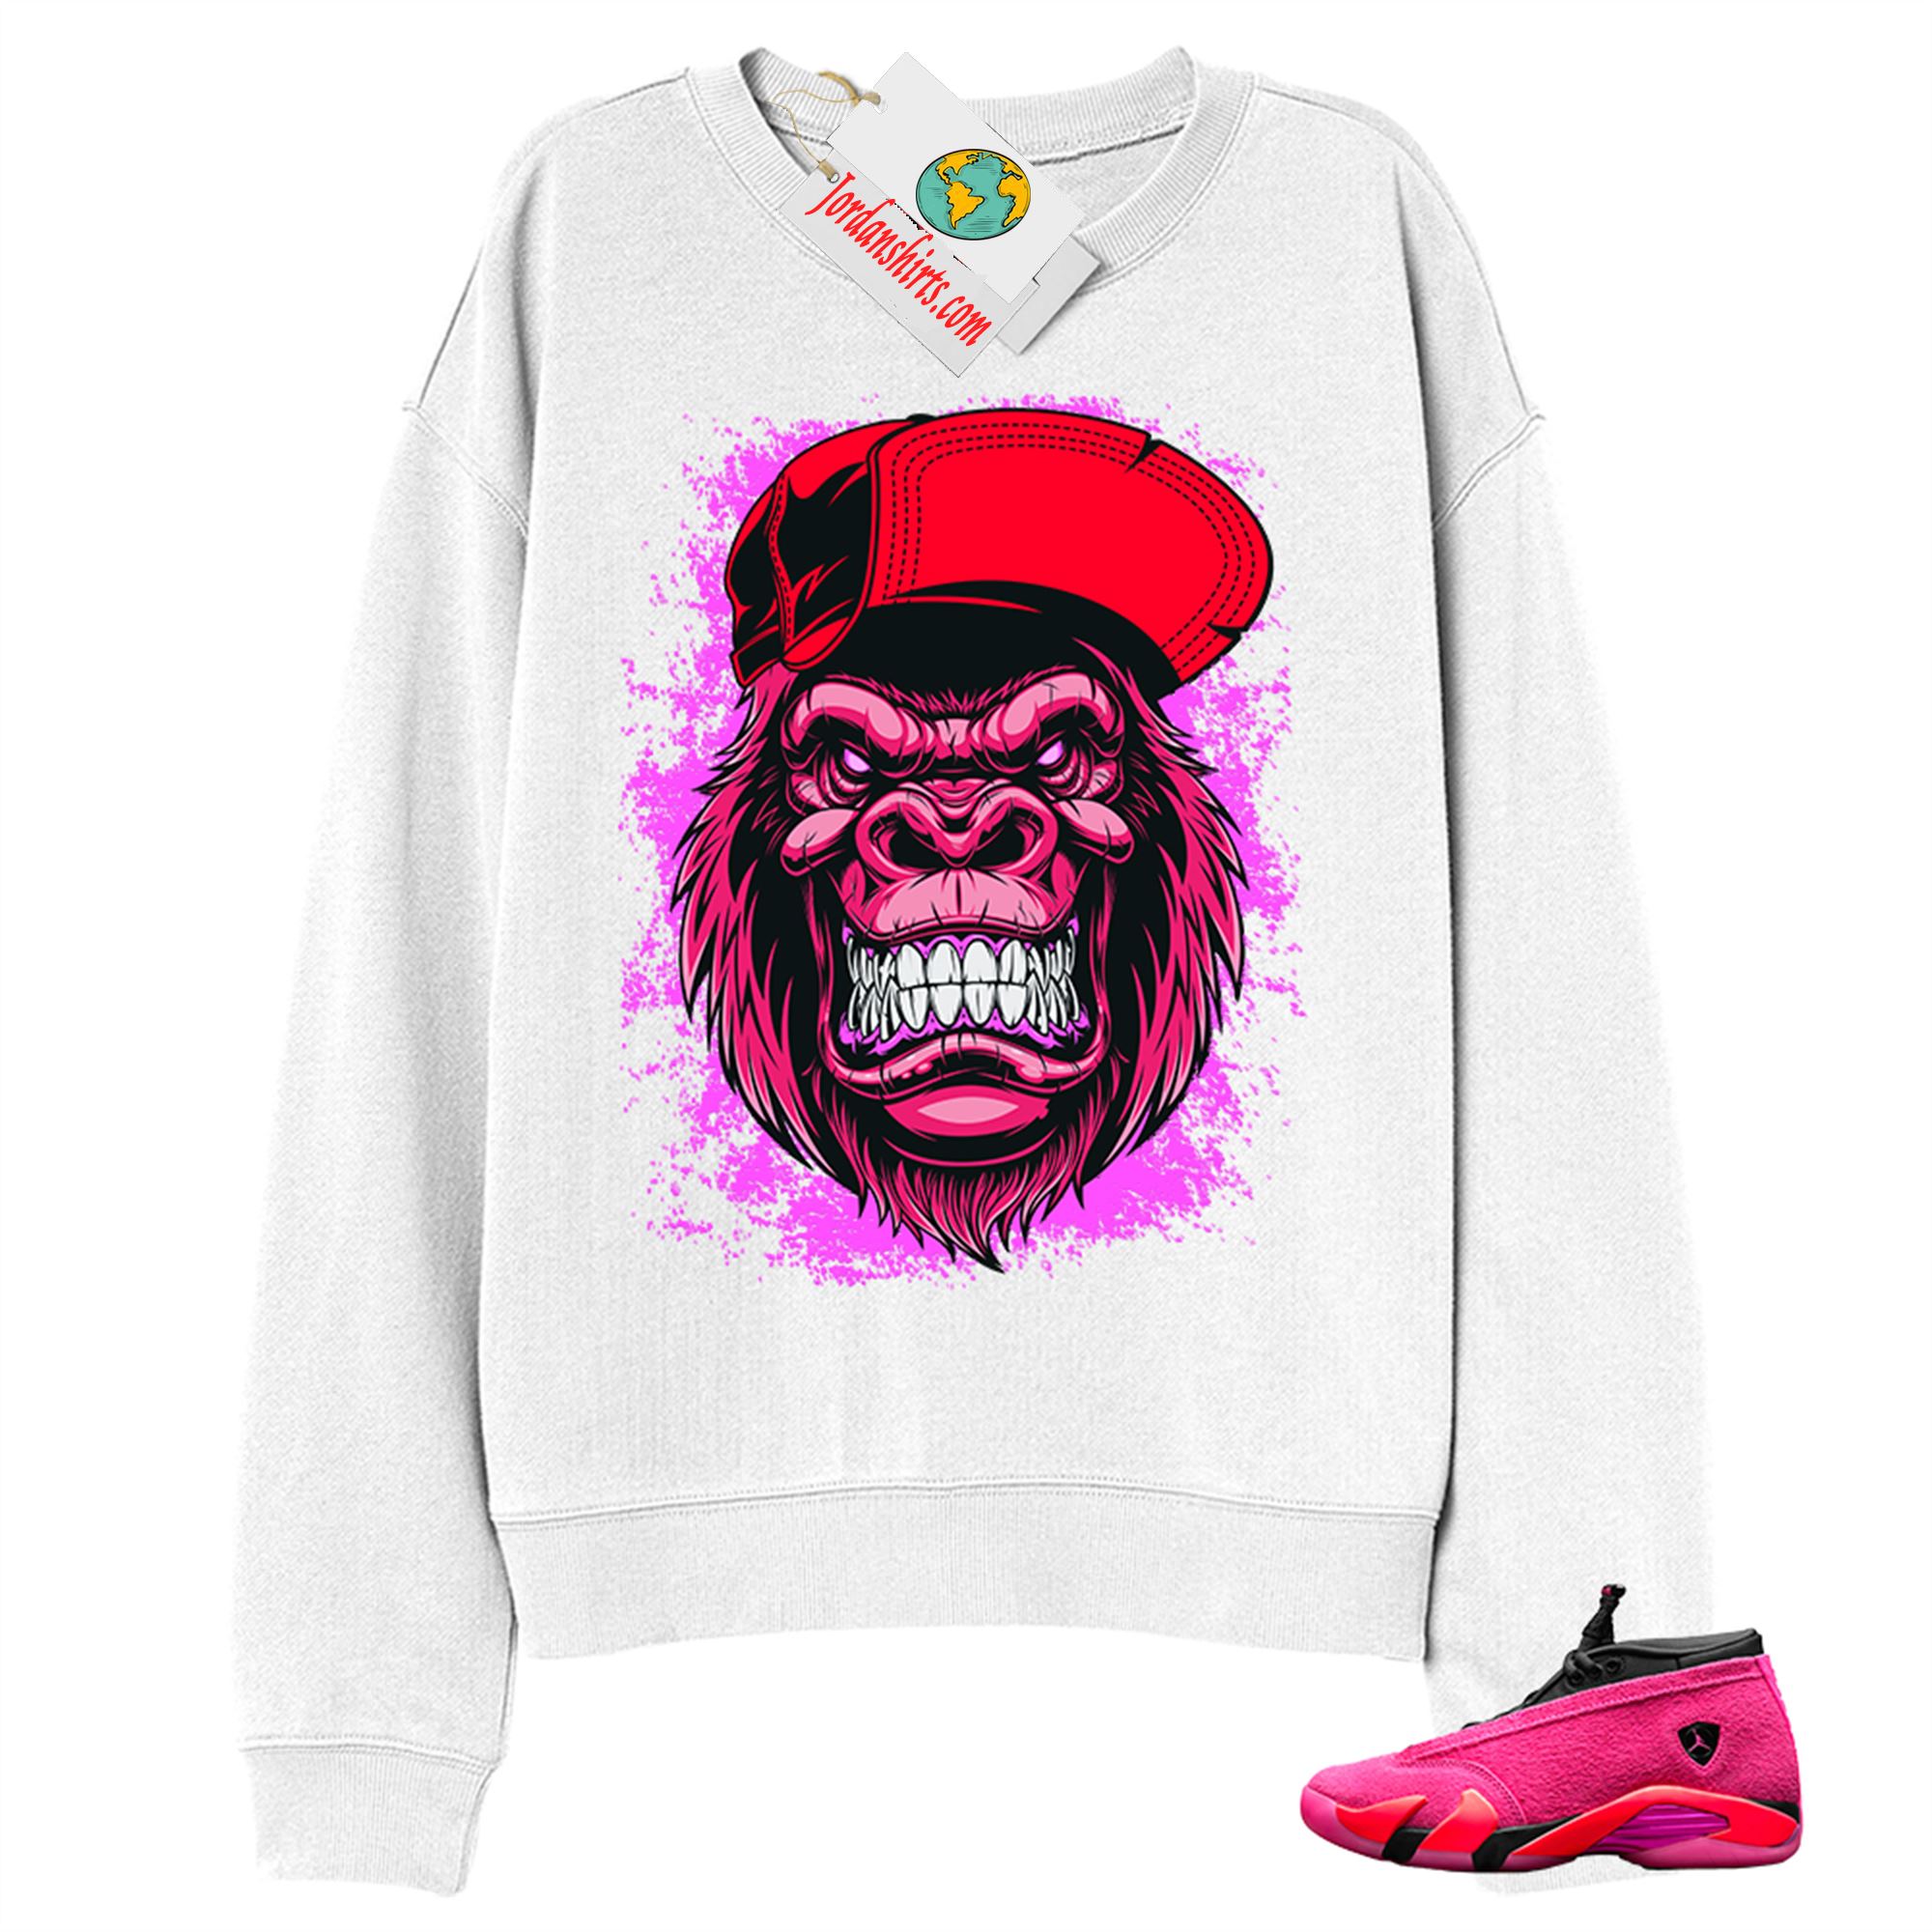 Jordan 14 Sweatshirt, Ferocious Gorilla White Sweatshirt Air Jordan 14 Wmns Shocking Pink 14s Size Up To 5xl